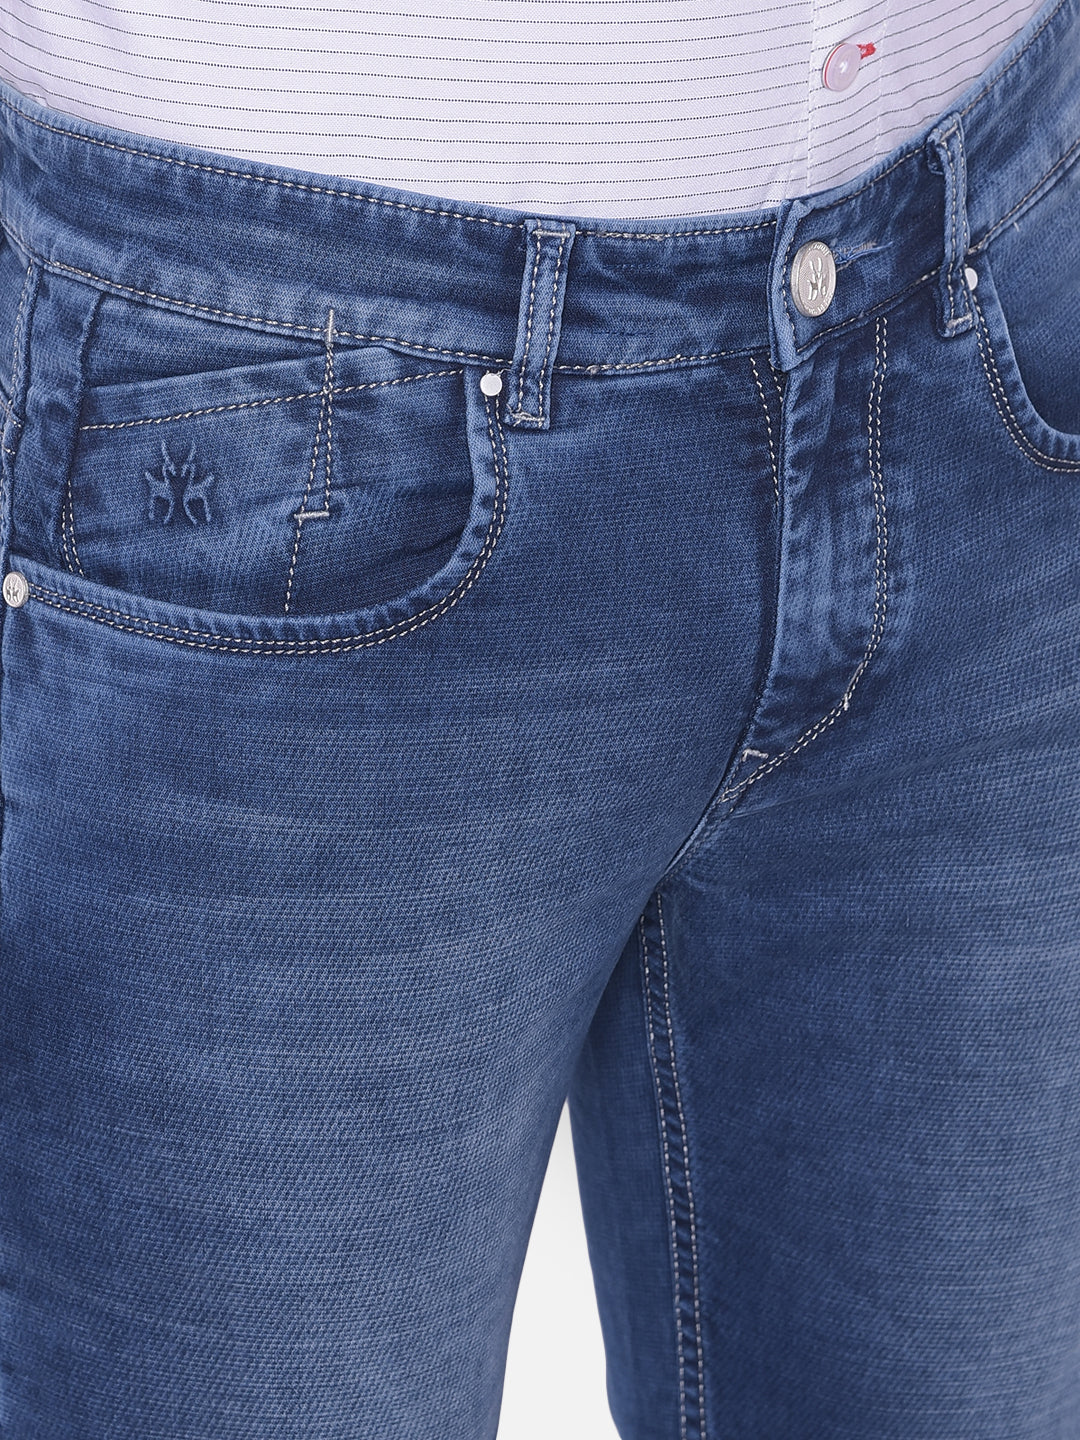 Blue Jeans-Mens Jeans-Crimsoune Club